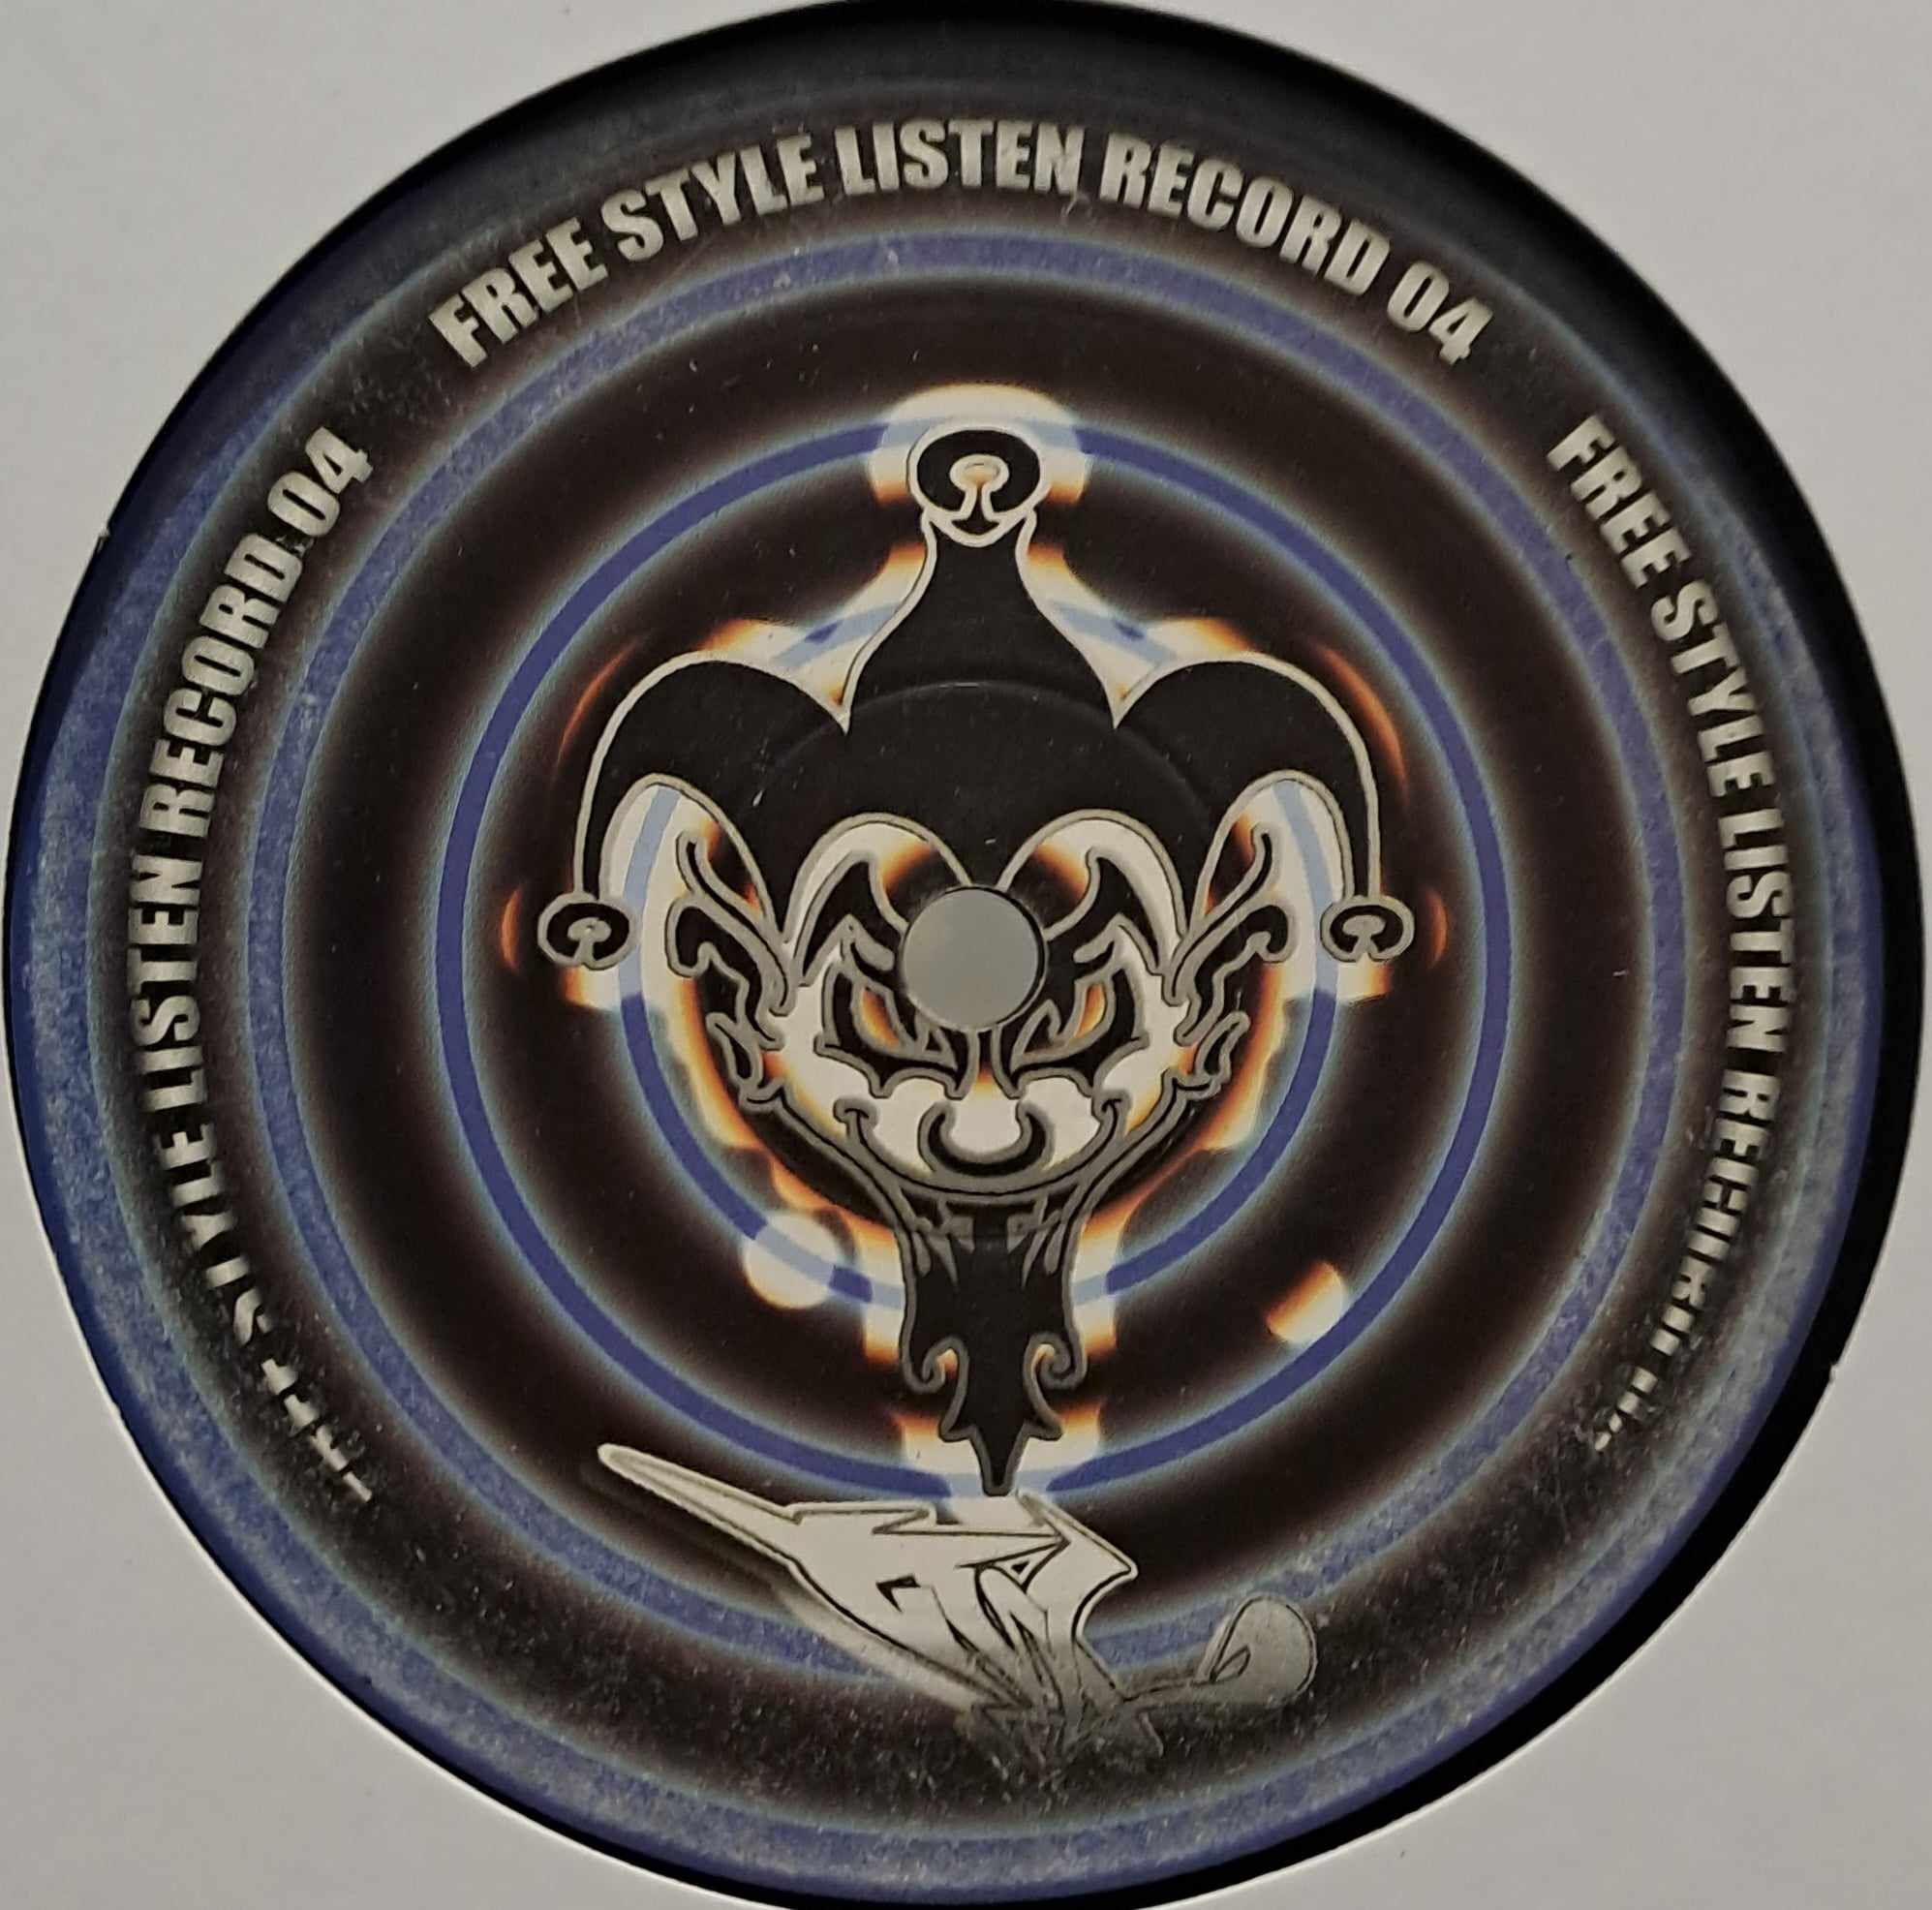 Free Style Listen 04 - vinyle freetekno